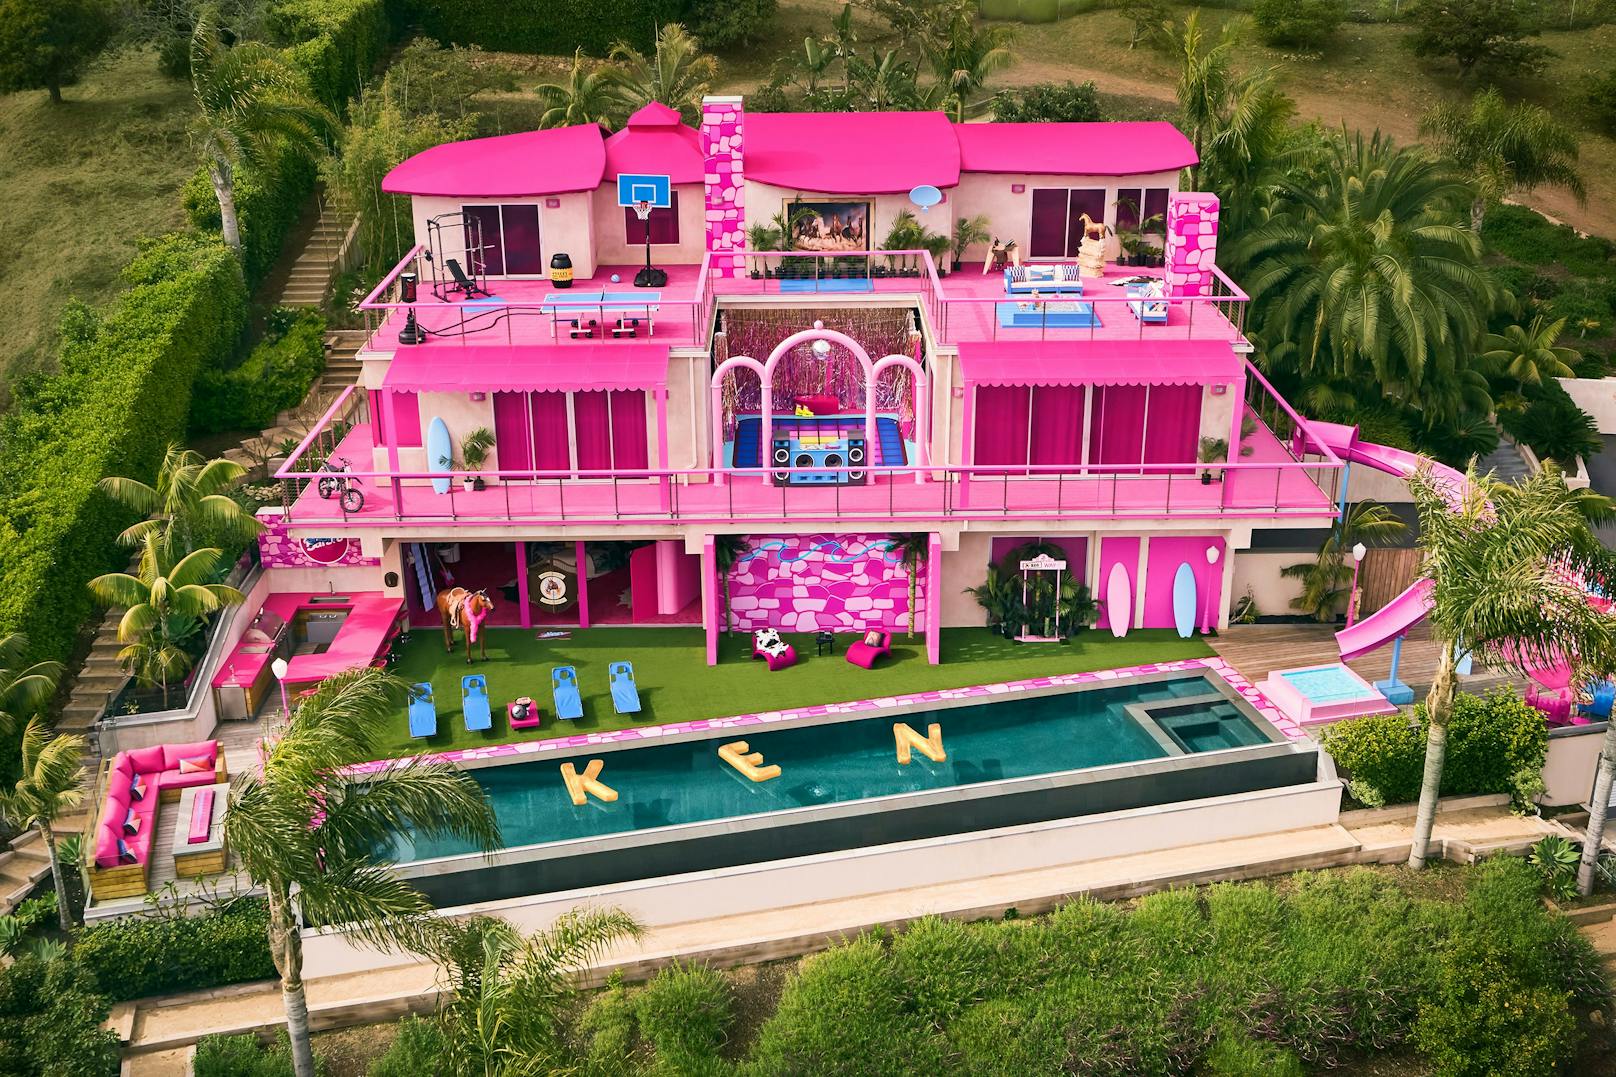 Vom rosafarbenem Plastik-Traumhaus soll man einen wunderbaren Panorama Blick über den Strand von Malibu genießen - vor allem vom Infinity Pool aus.